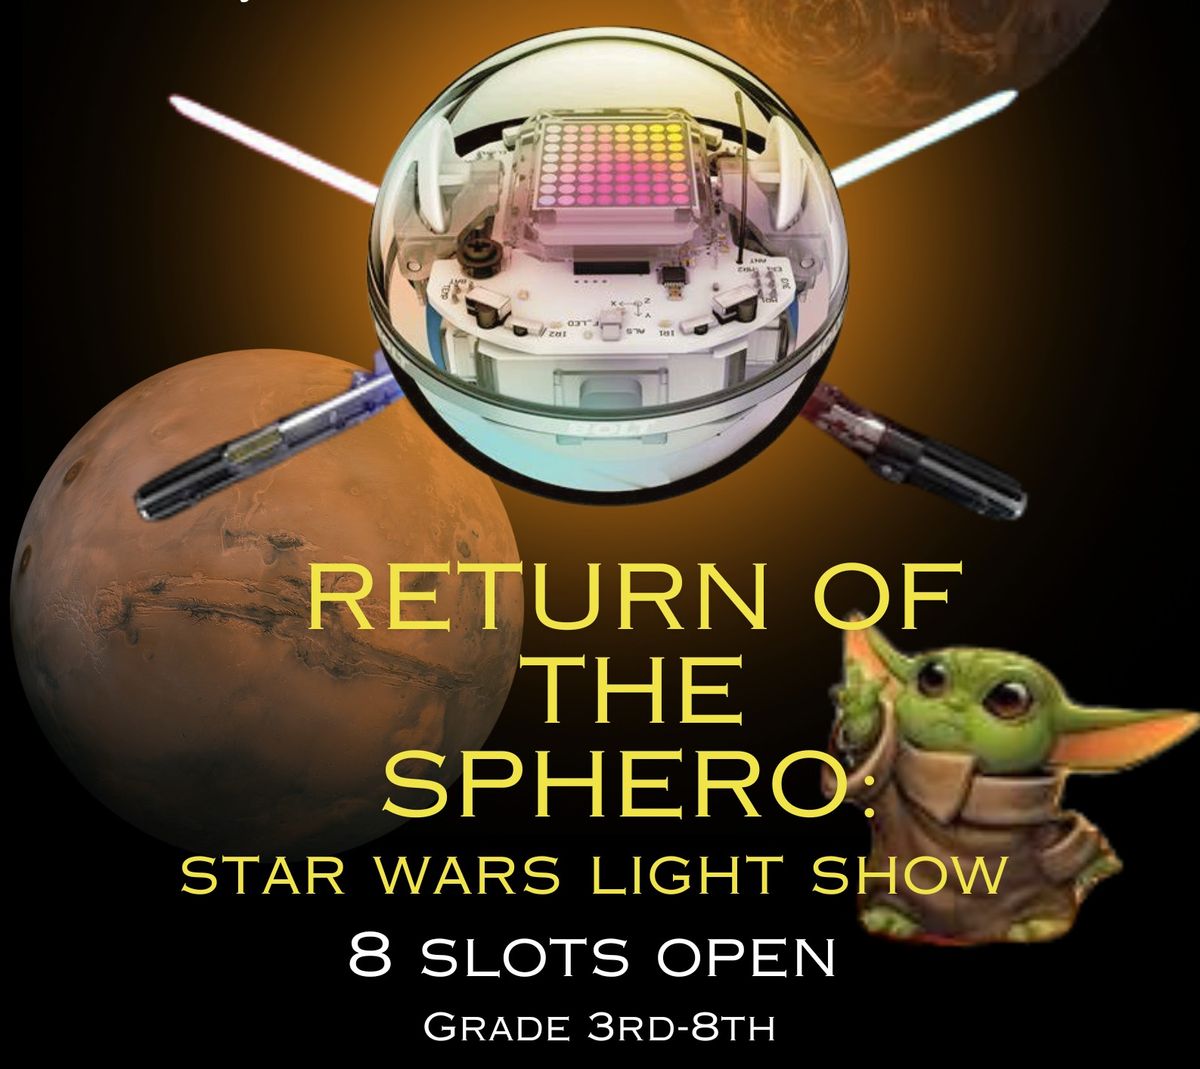 Return of the Sphero: Star Wars Light Show